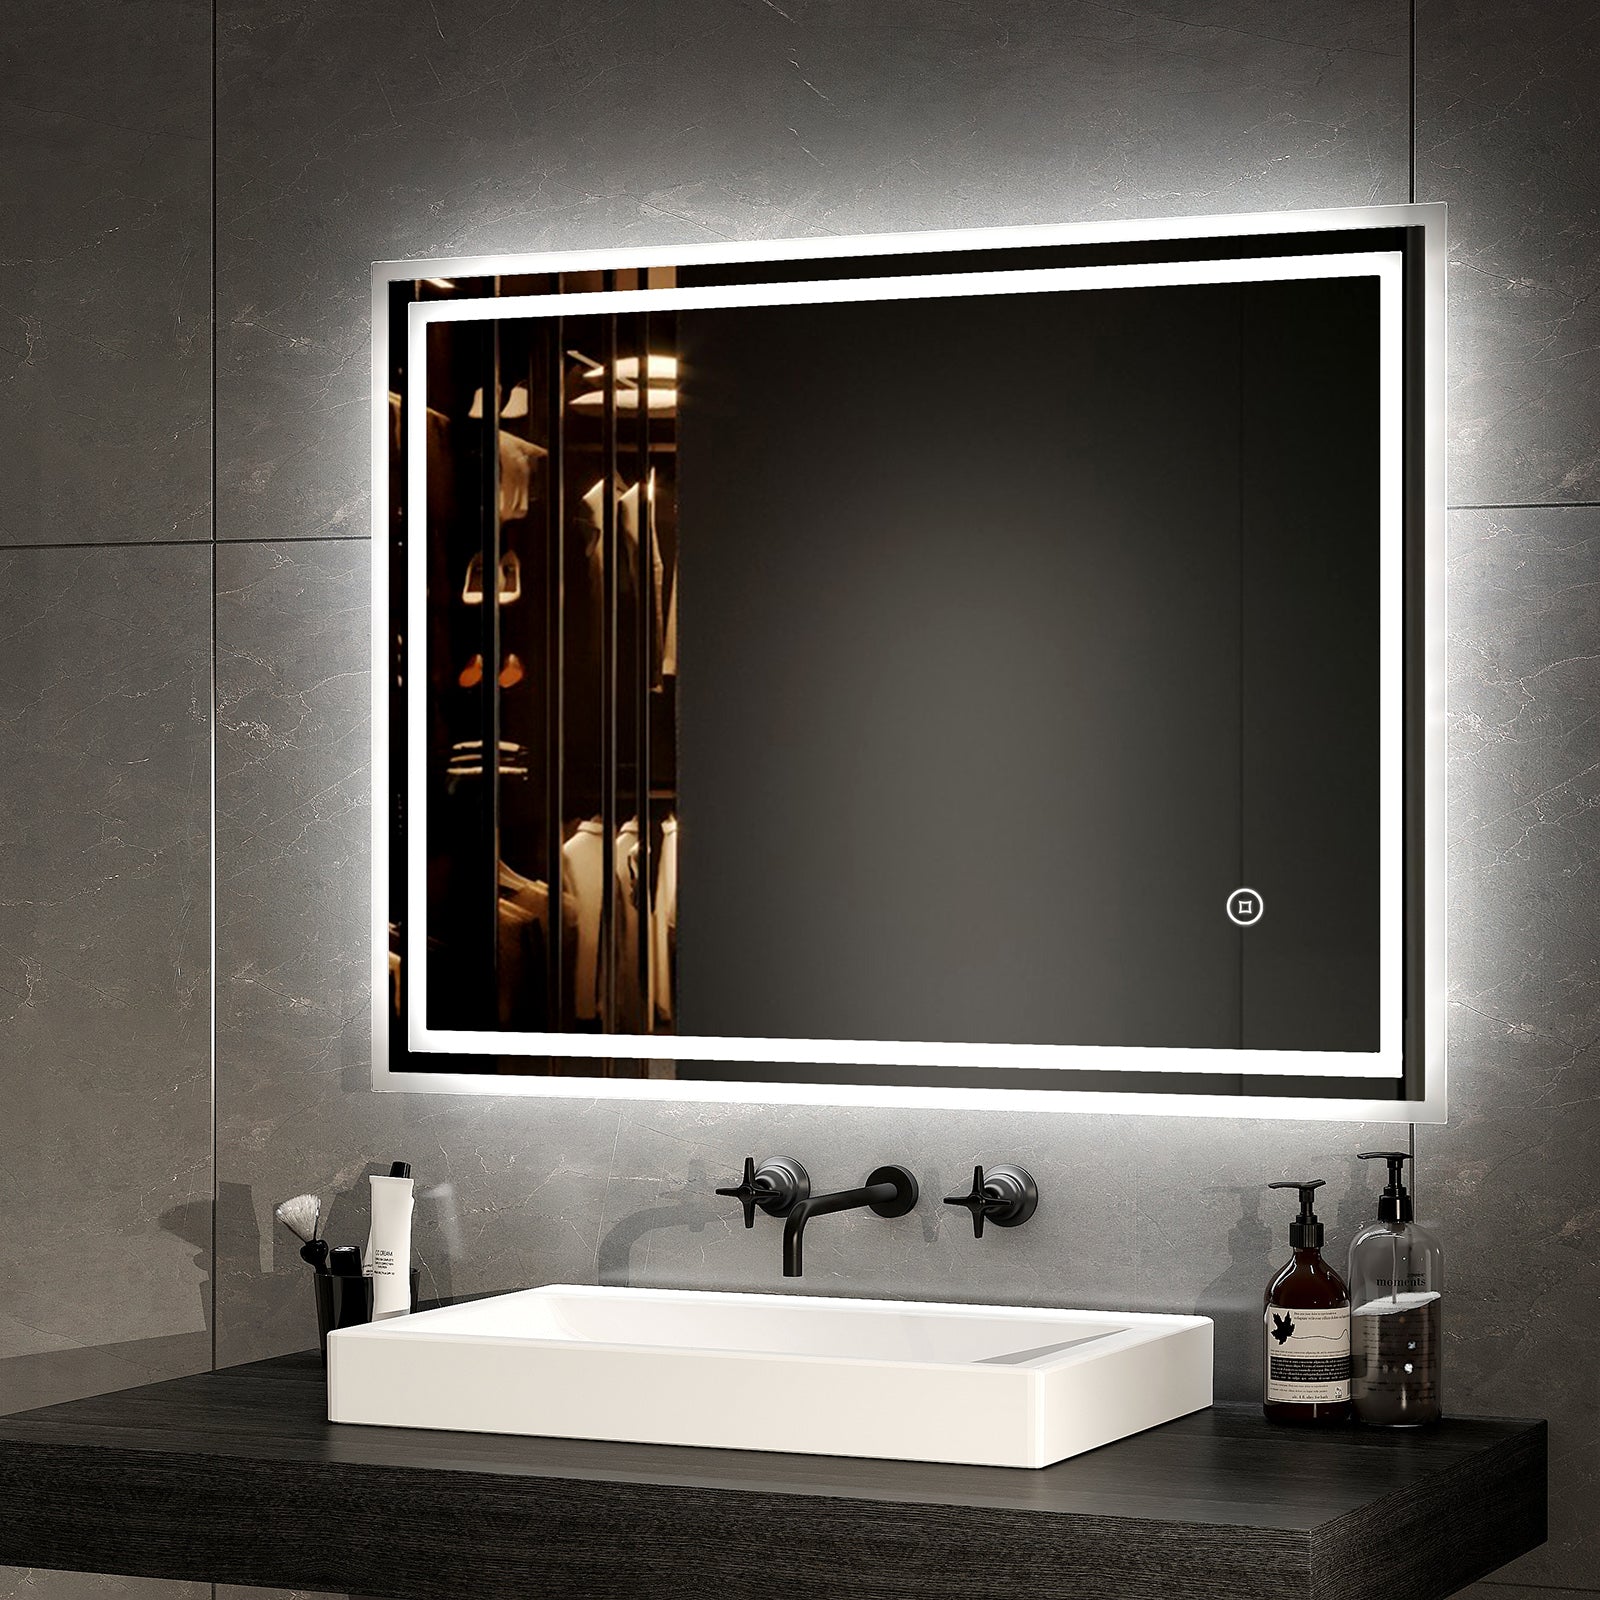 EMKE LED Badezimmerspiegel mit Lichtern , 80 x 60 cm – Dimmbar – Antibeschlag – 3000K 4000K 6500K